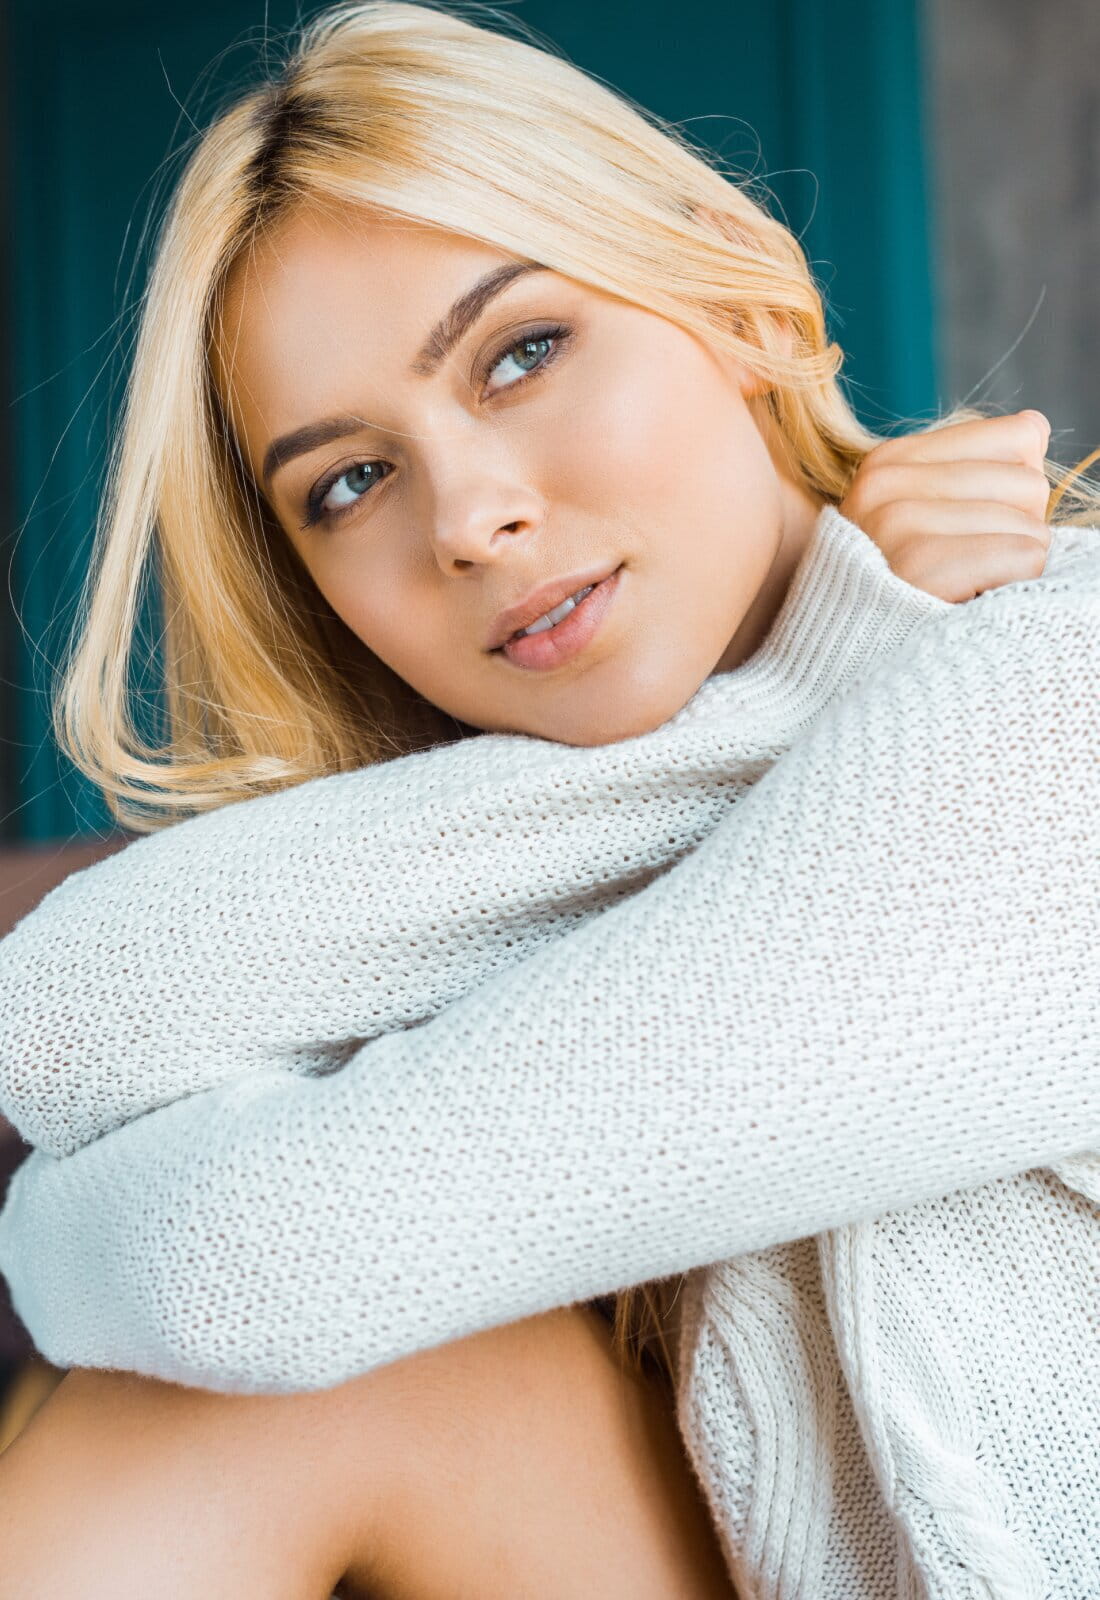 Carmel Medspa model with blonde hair